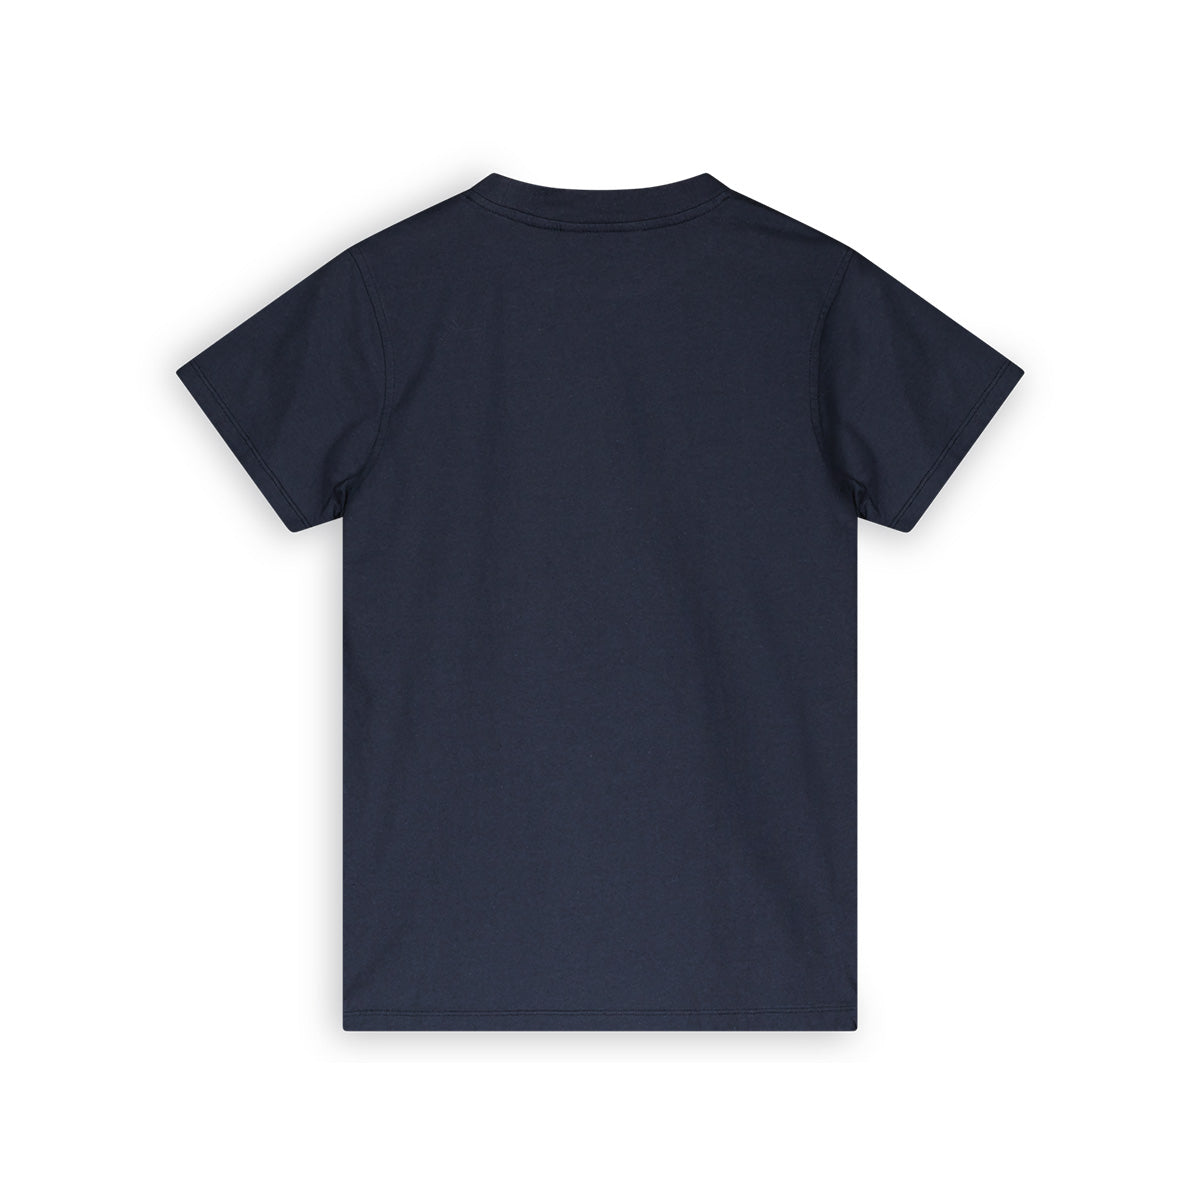 Jongens 717 T-shirt van SevenOneSeven in de kleur Navy Blazer in maat 170-176.